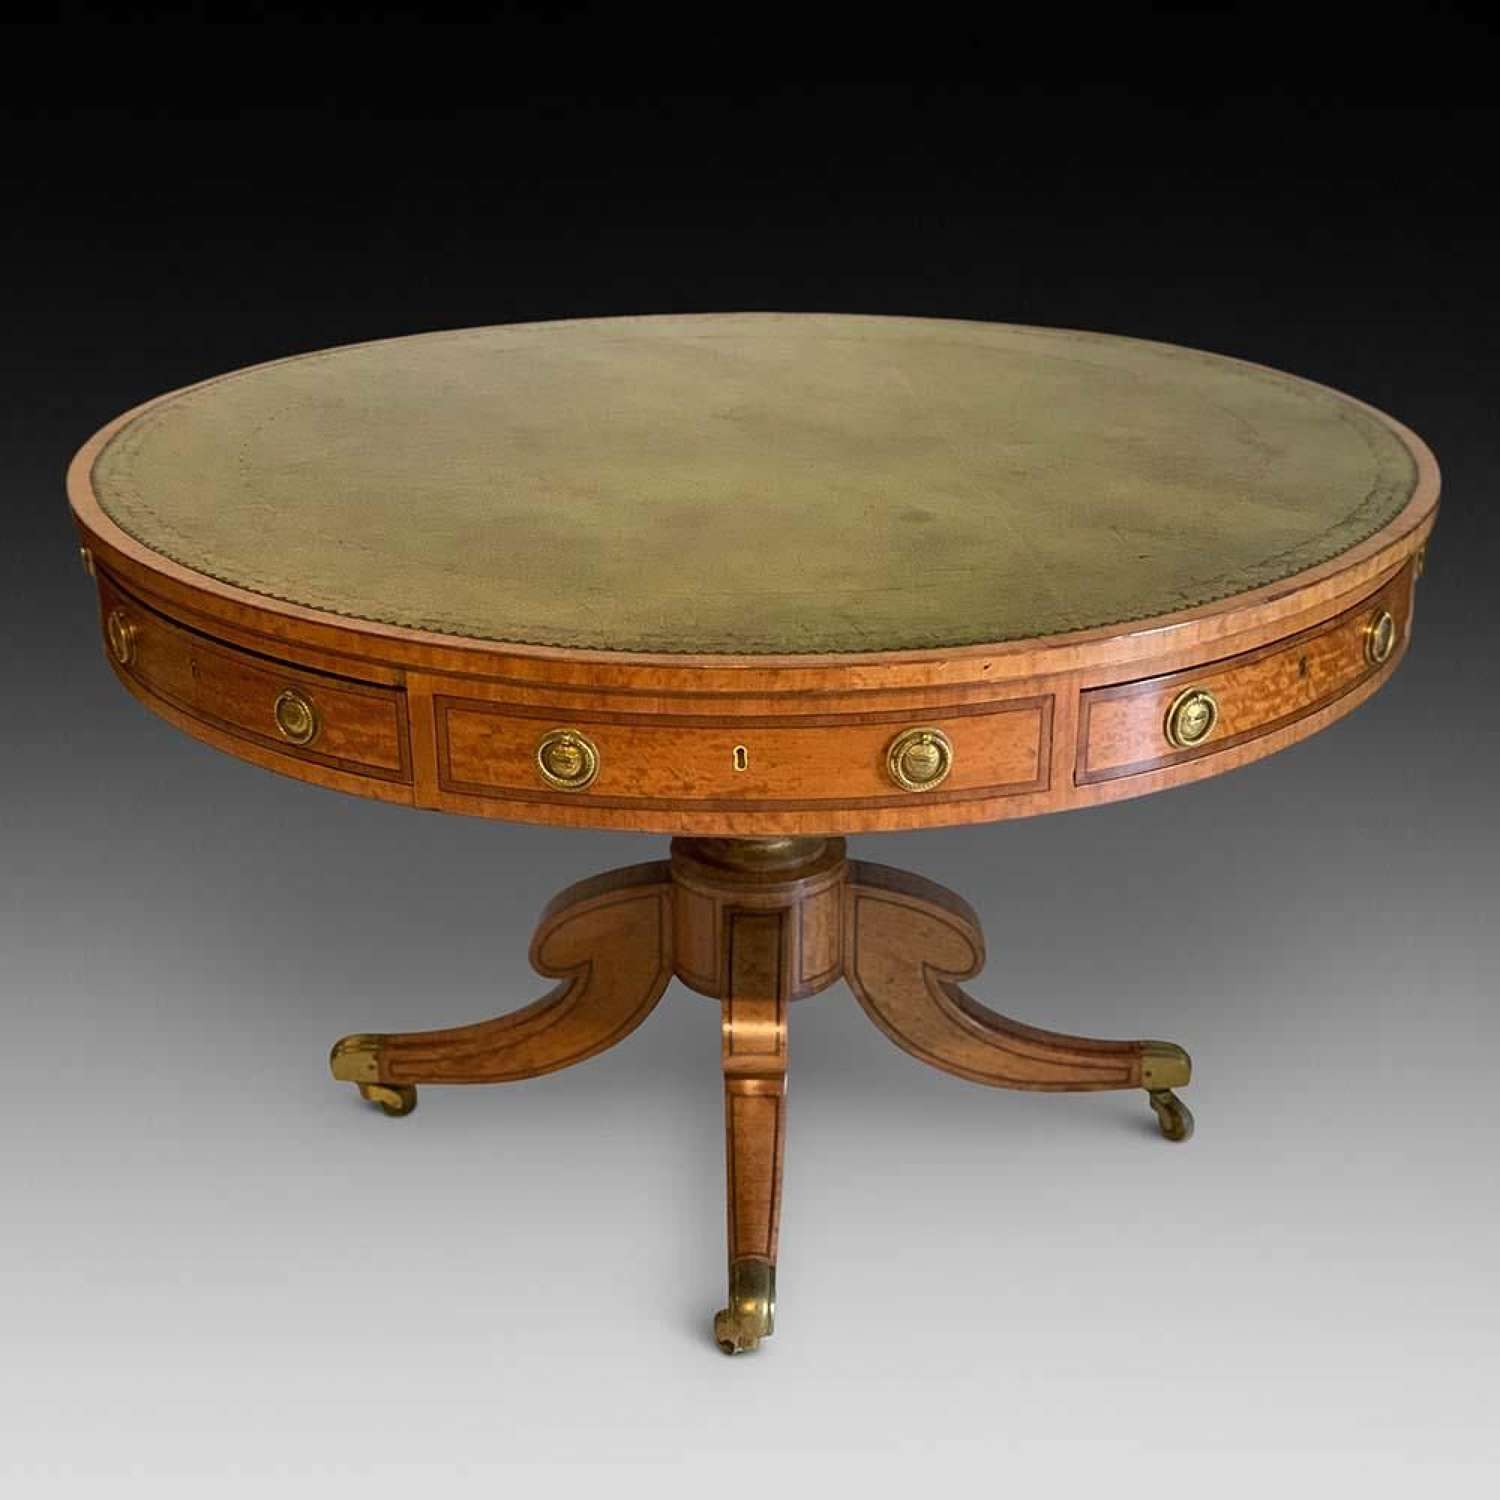 Stunning %26 Very Original Satinwood Drum Table, ca. 1800-1815